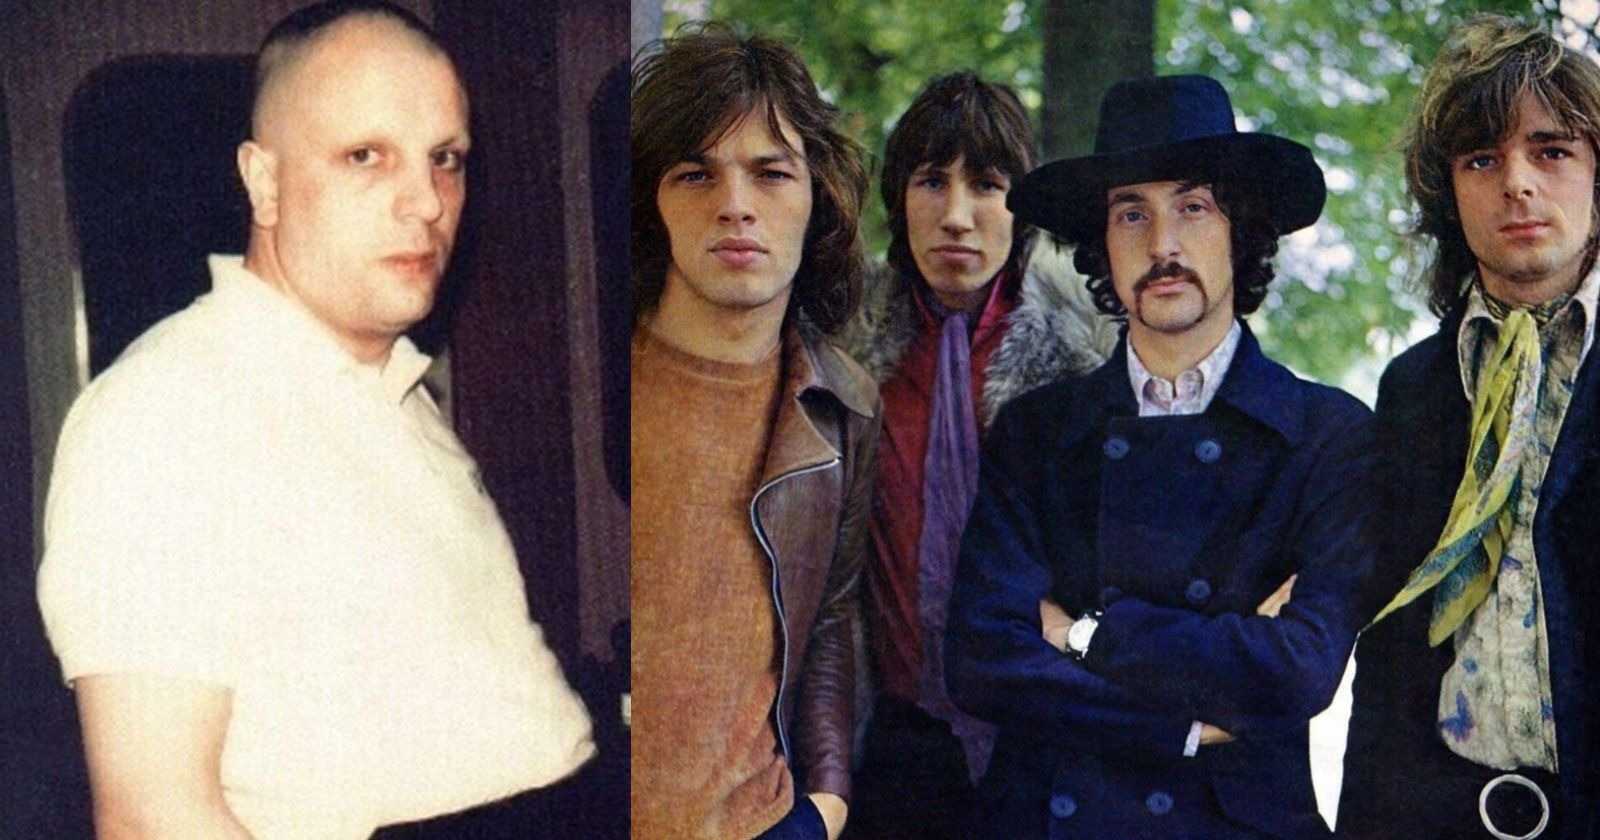 Pink Floyd Syd Barrett